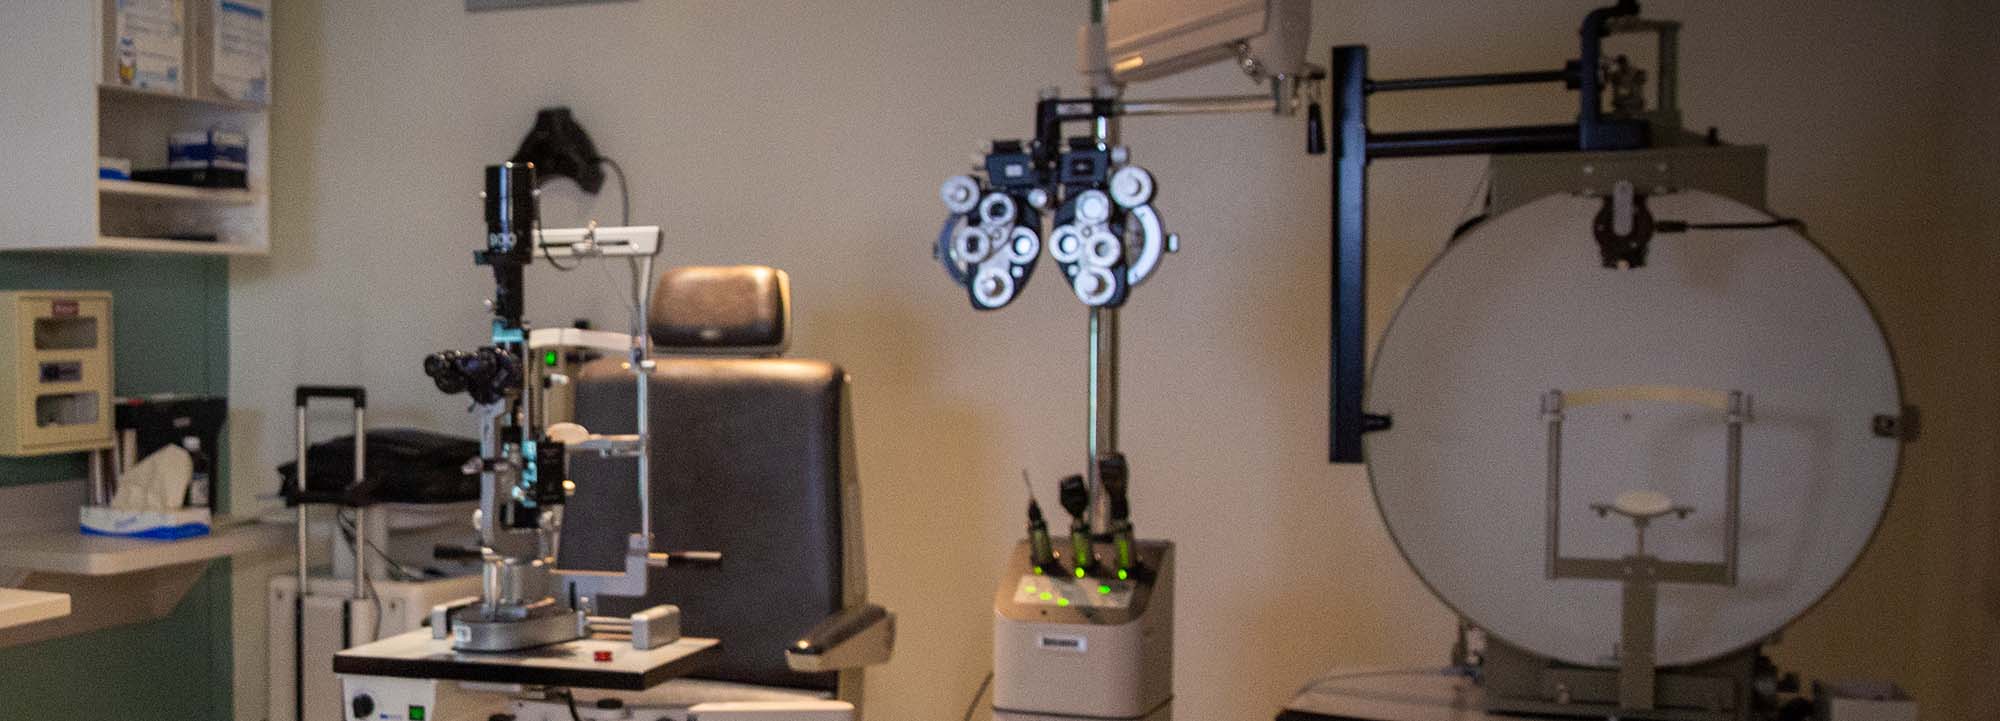 Офтальмологическое оборудование в глазной клинике